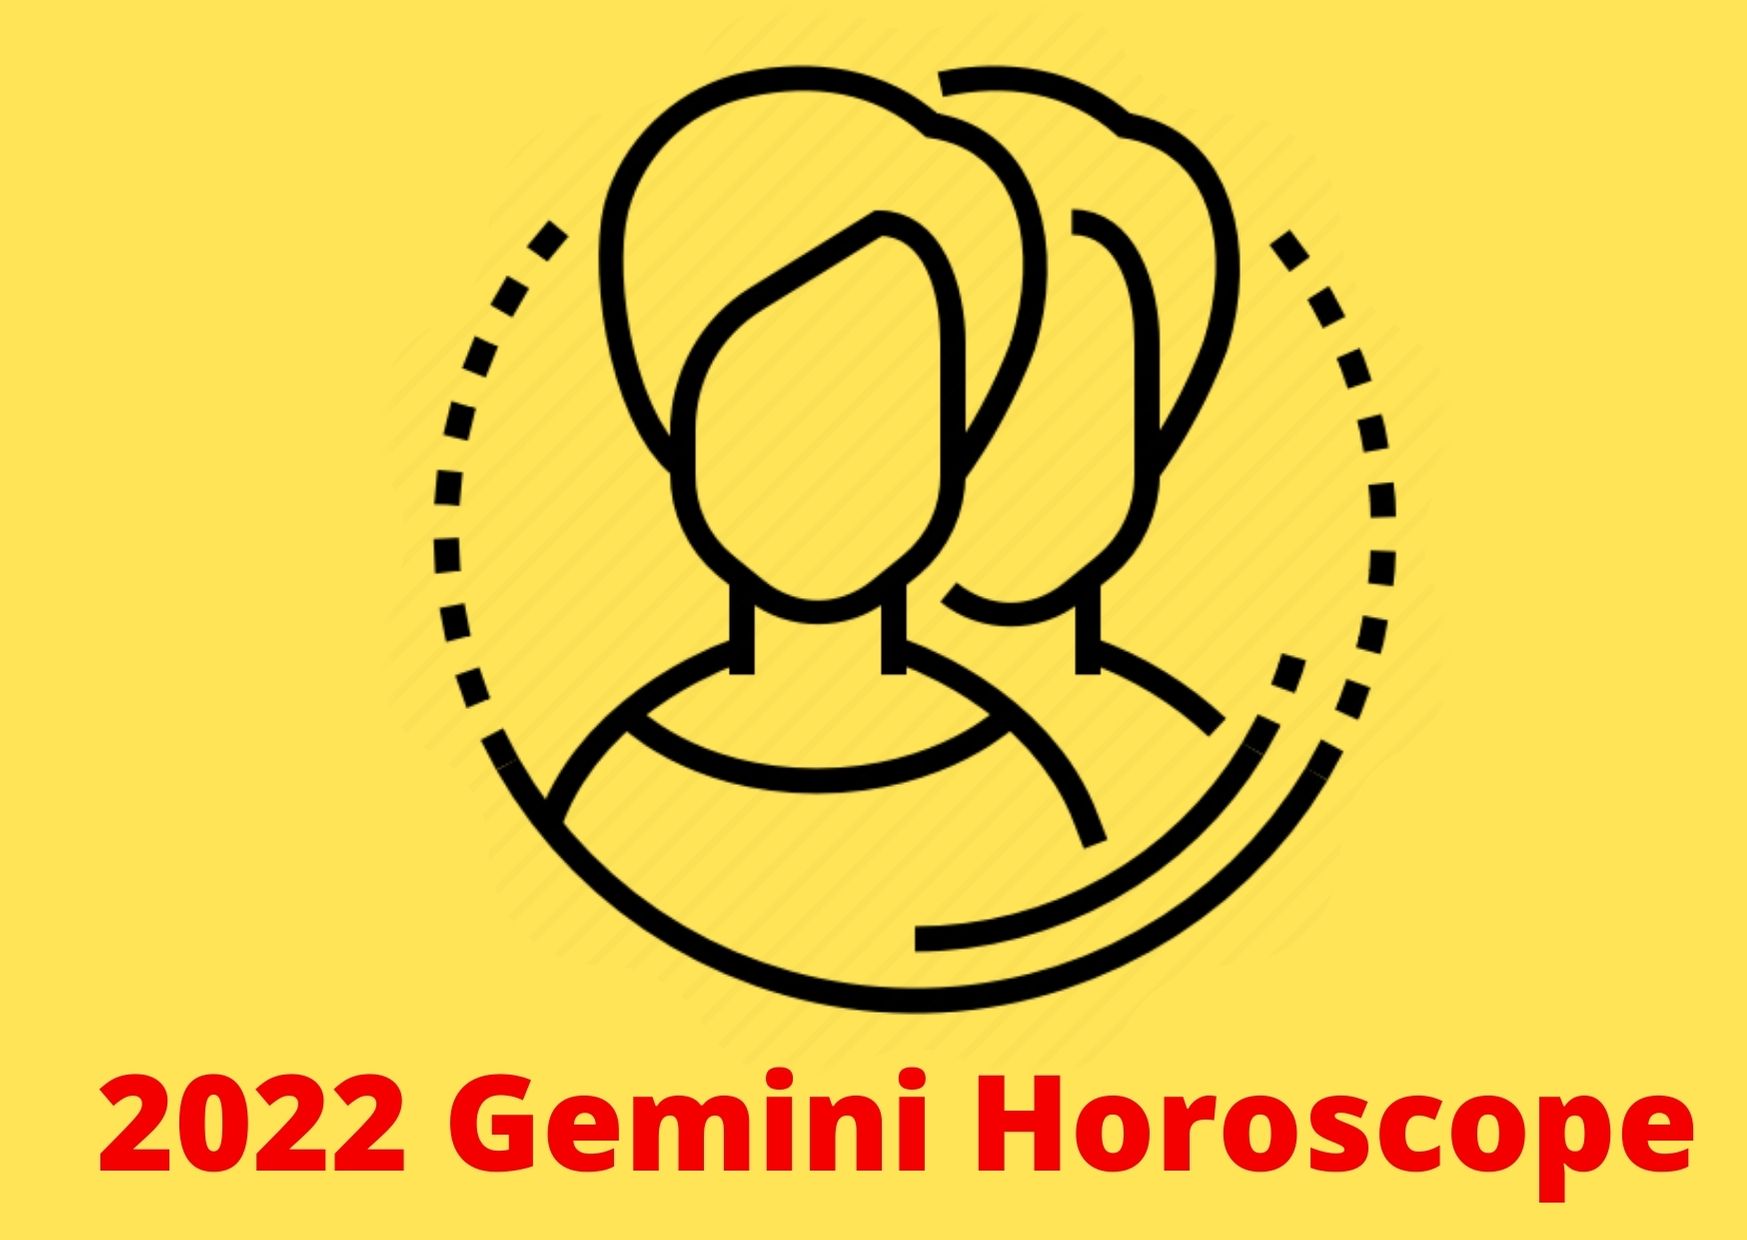 2022 Gemini Horoscope yearly